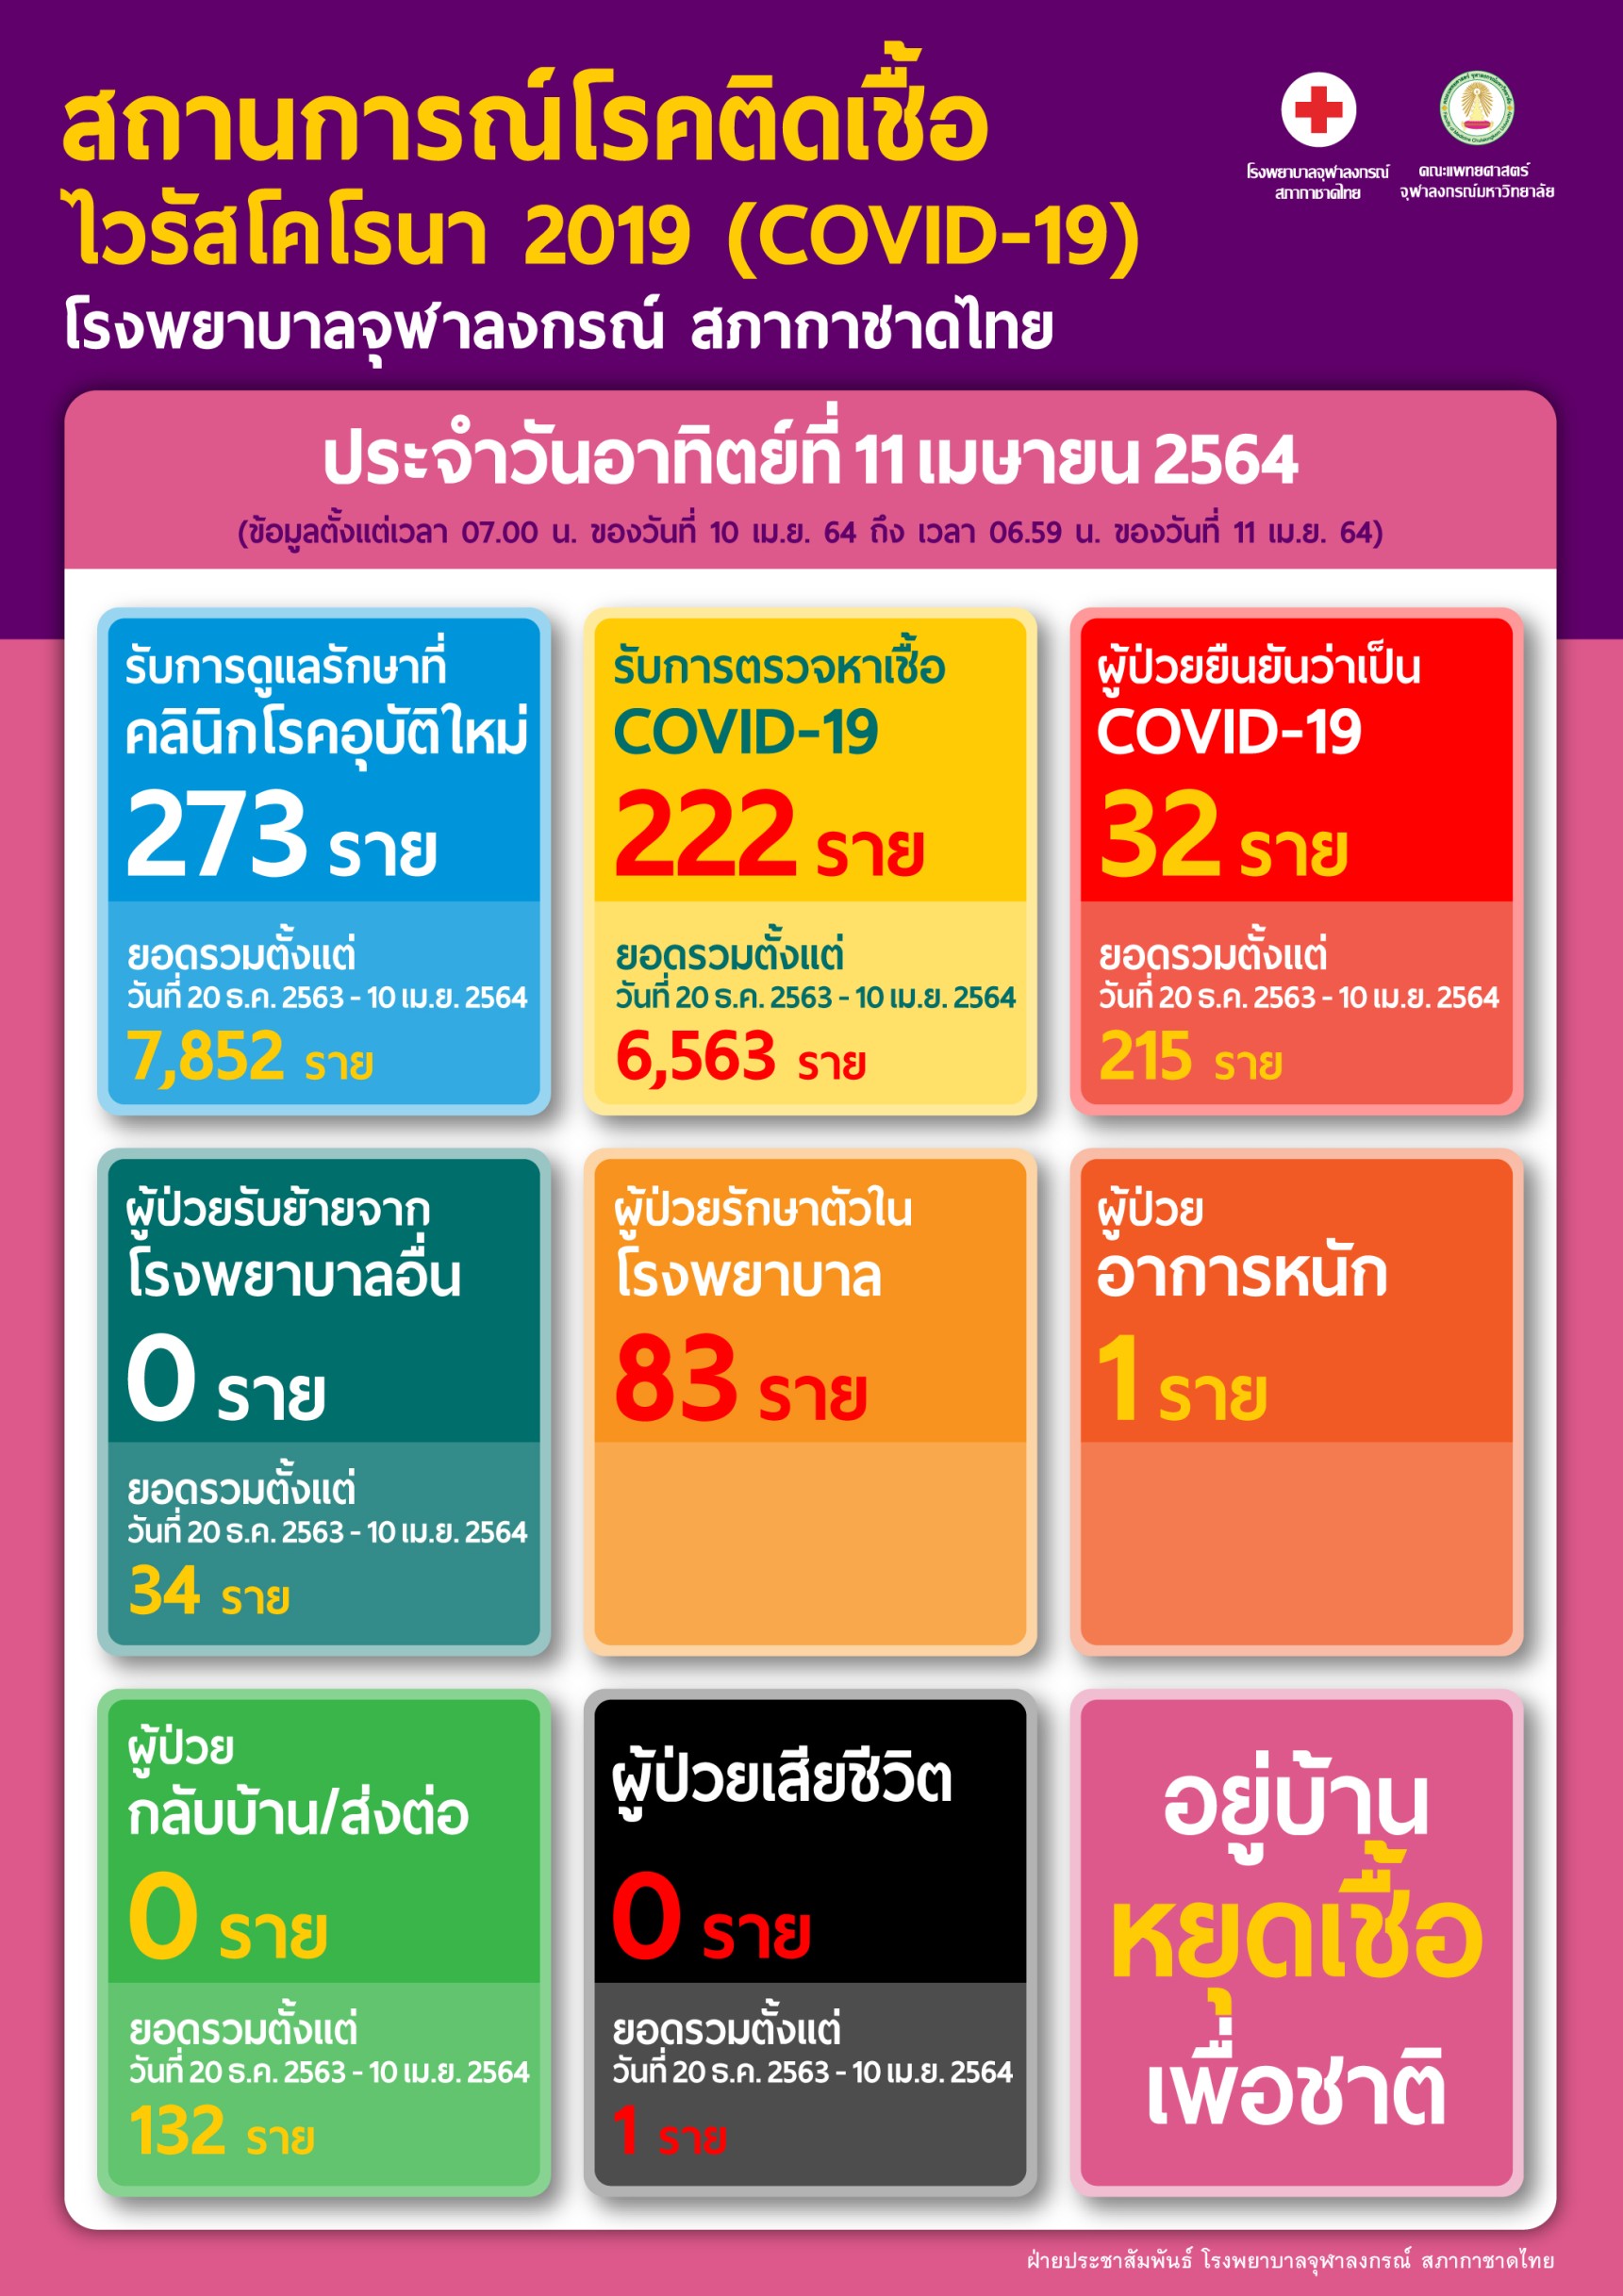 สถานการณ์โรคติดเชื้อ ไวรัสโคโรนา 2019 (COVID-19) โรงพยาบาลจุฬาลงกรณ์ สภากาชาดไทย ประจำวันอาทิตย์ที่ 11 เมษายน 2564